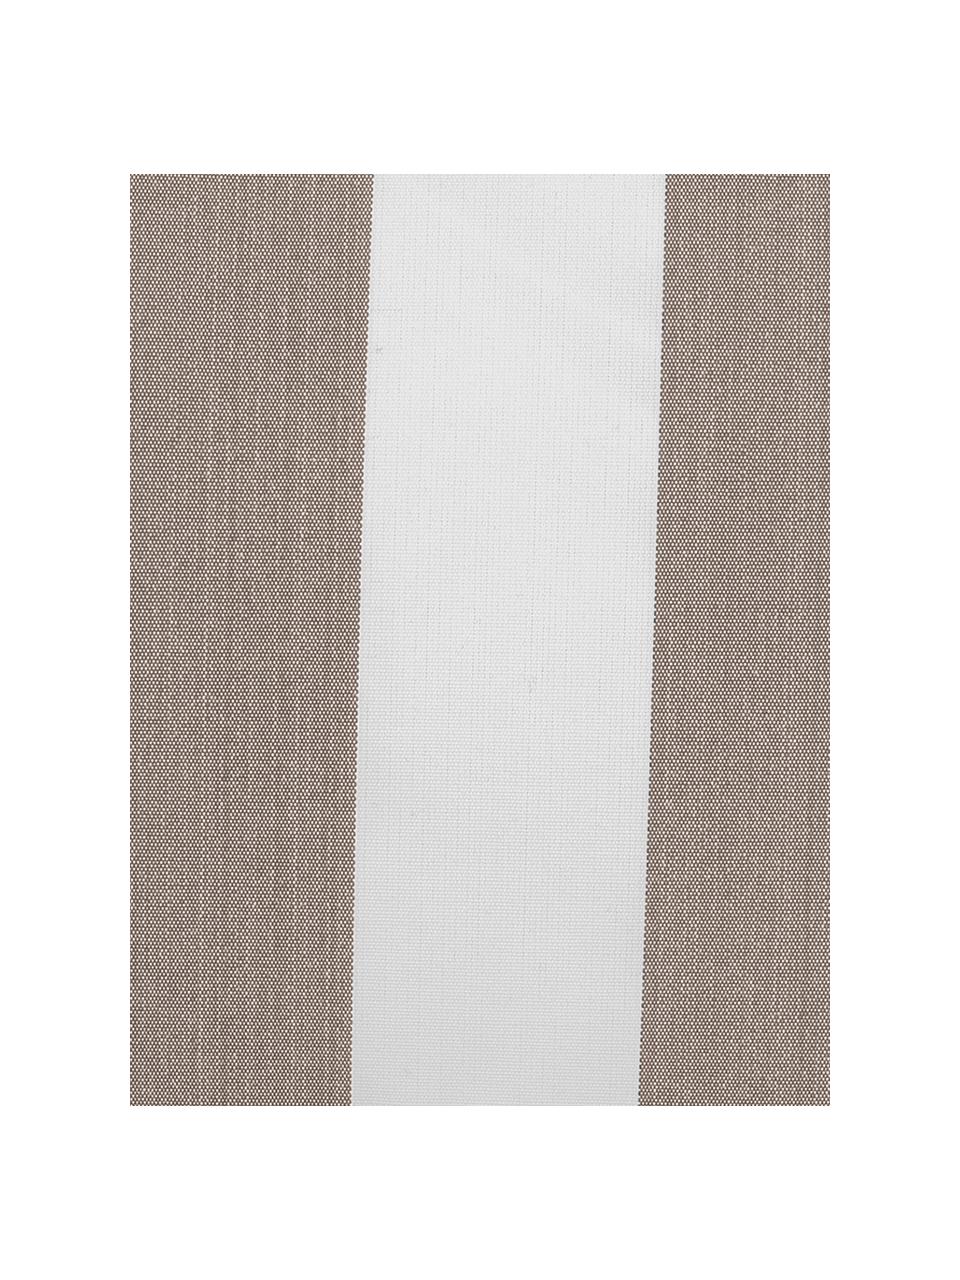 Gestreifte Outdoor-Kissenhülle Santorin in Taupe/Weiß, 100% Polypropylen, Taupe, Weiß, B 40 x L 60 cm